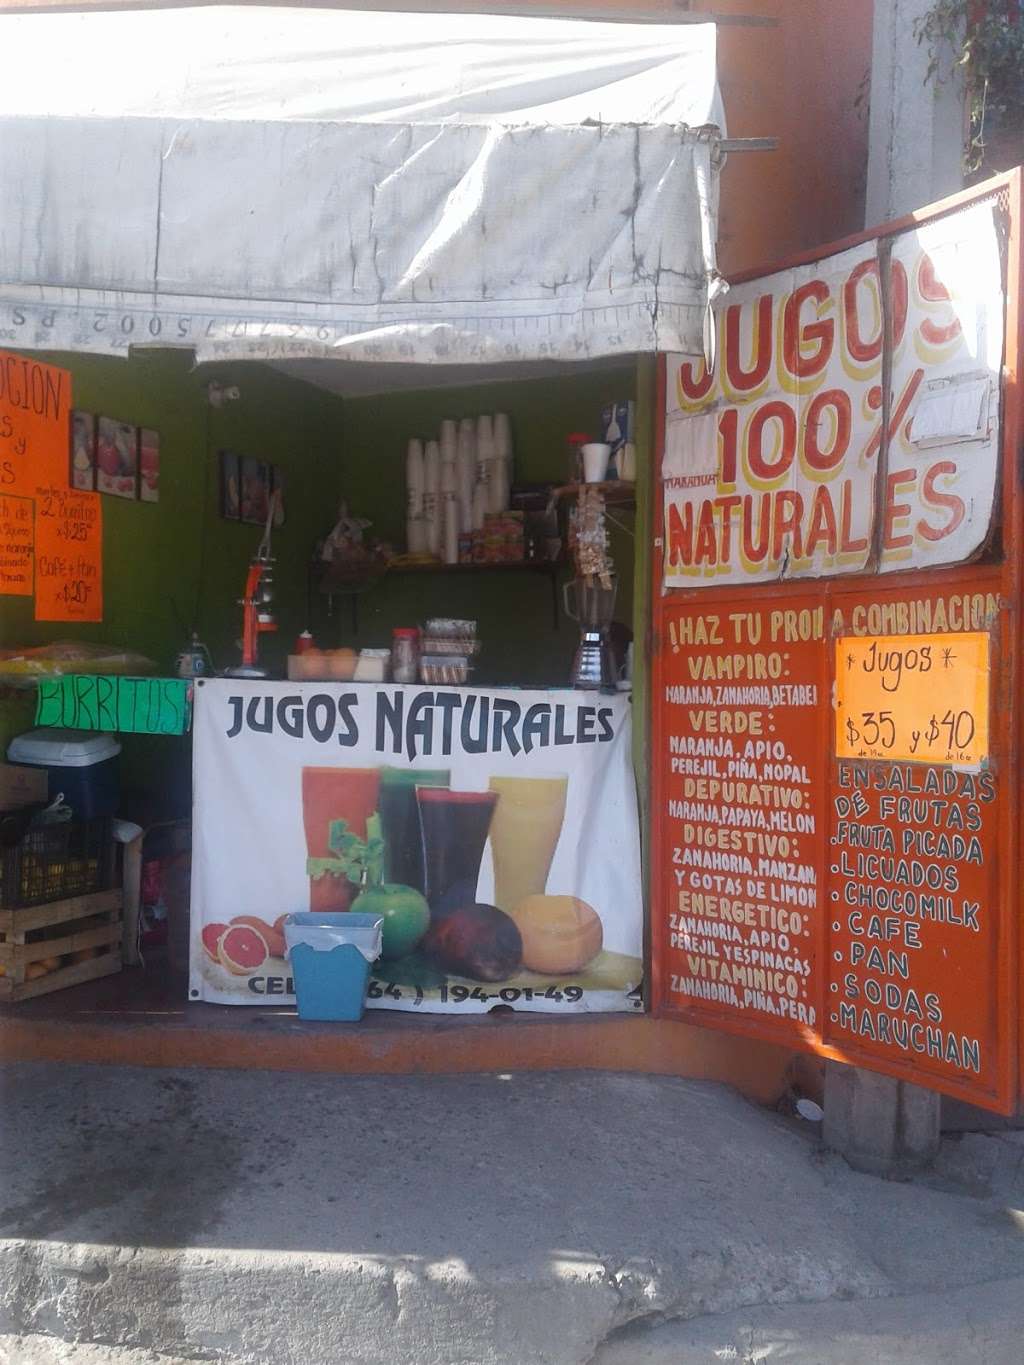 Jugos 100% Naturales La Skinni | Anexa 20 de Noviembre, 22100 Tijuana, B.C., Mexico | Phone: 664 194 0149